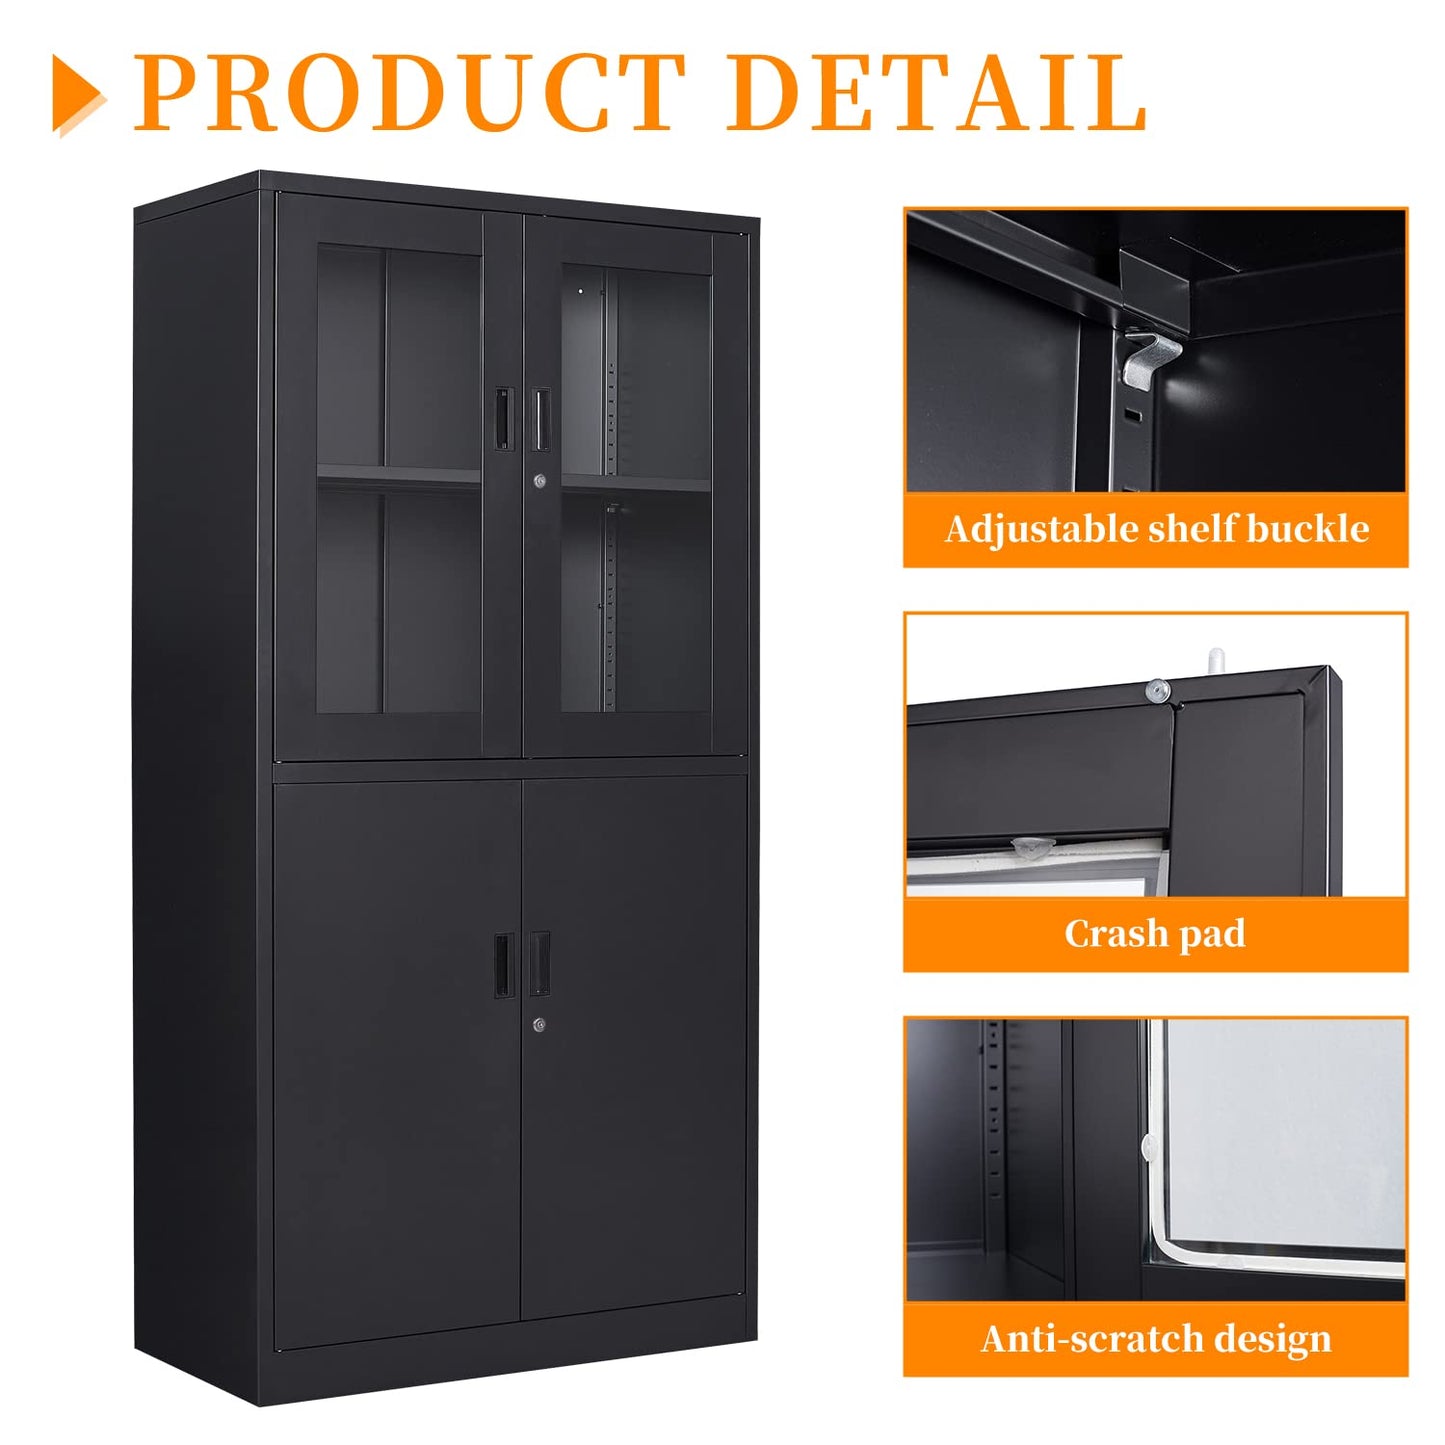 Anxxsu Black Metal Storage Cabinet with Glass Doors, 71" Locking Glass Door Cabinet with 2 Adjustable Shelves, Steel Storage Cabinet with 4 Doors for